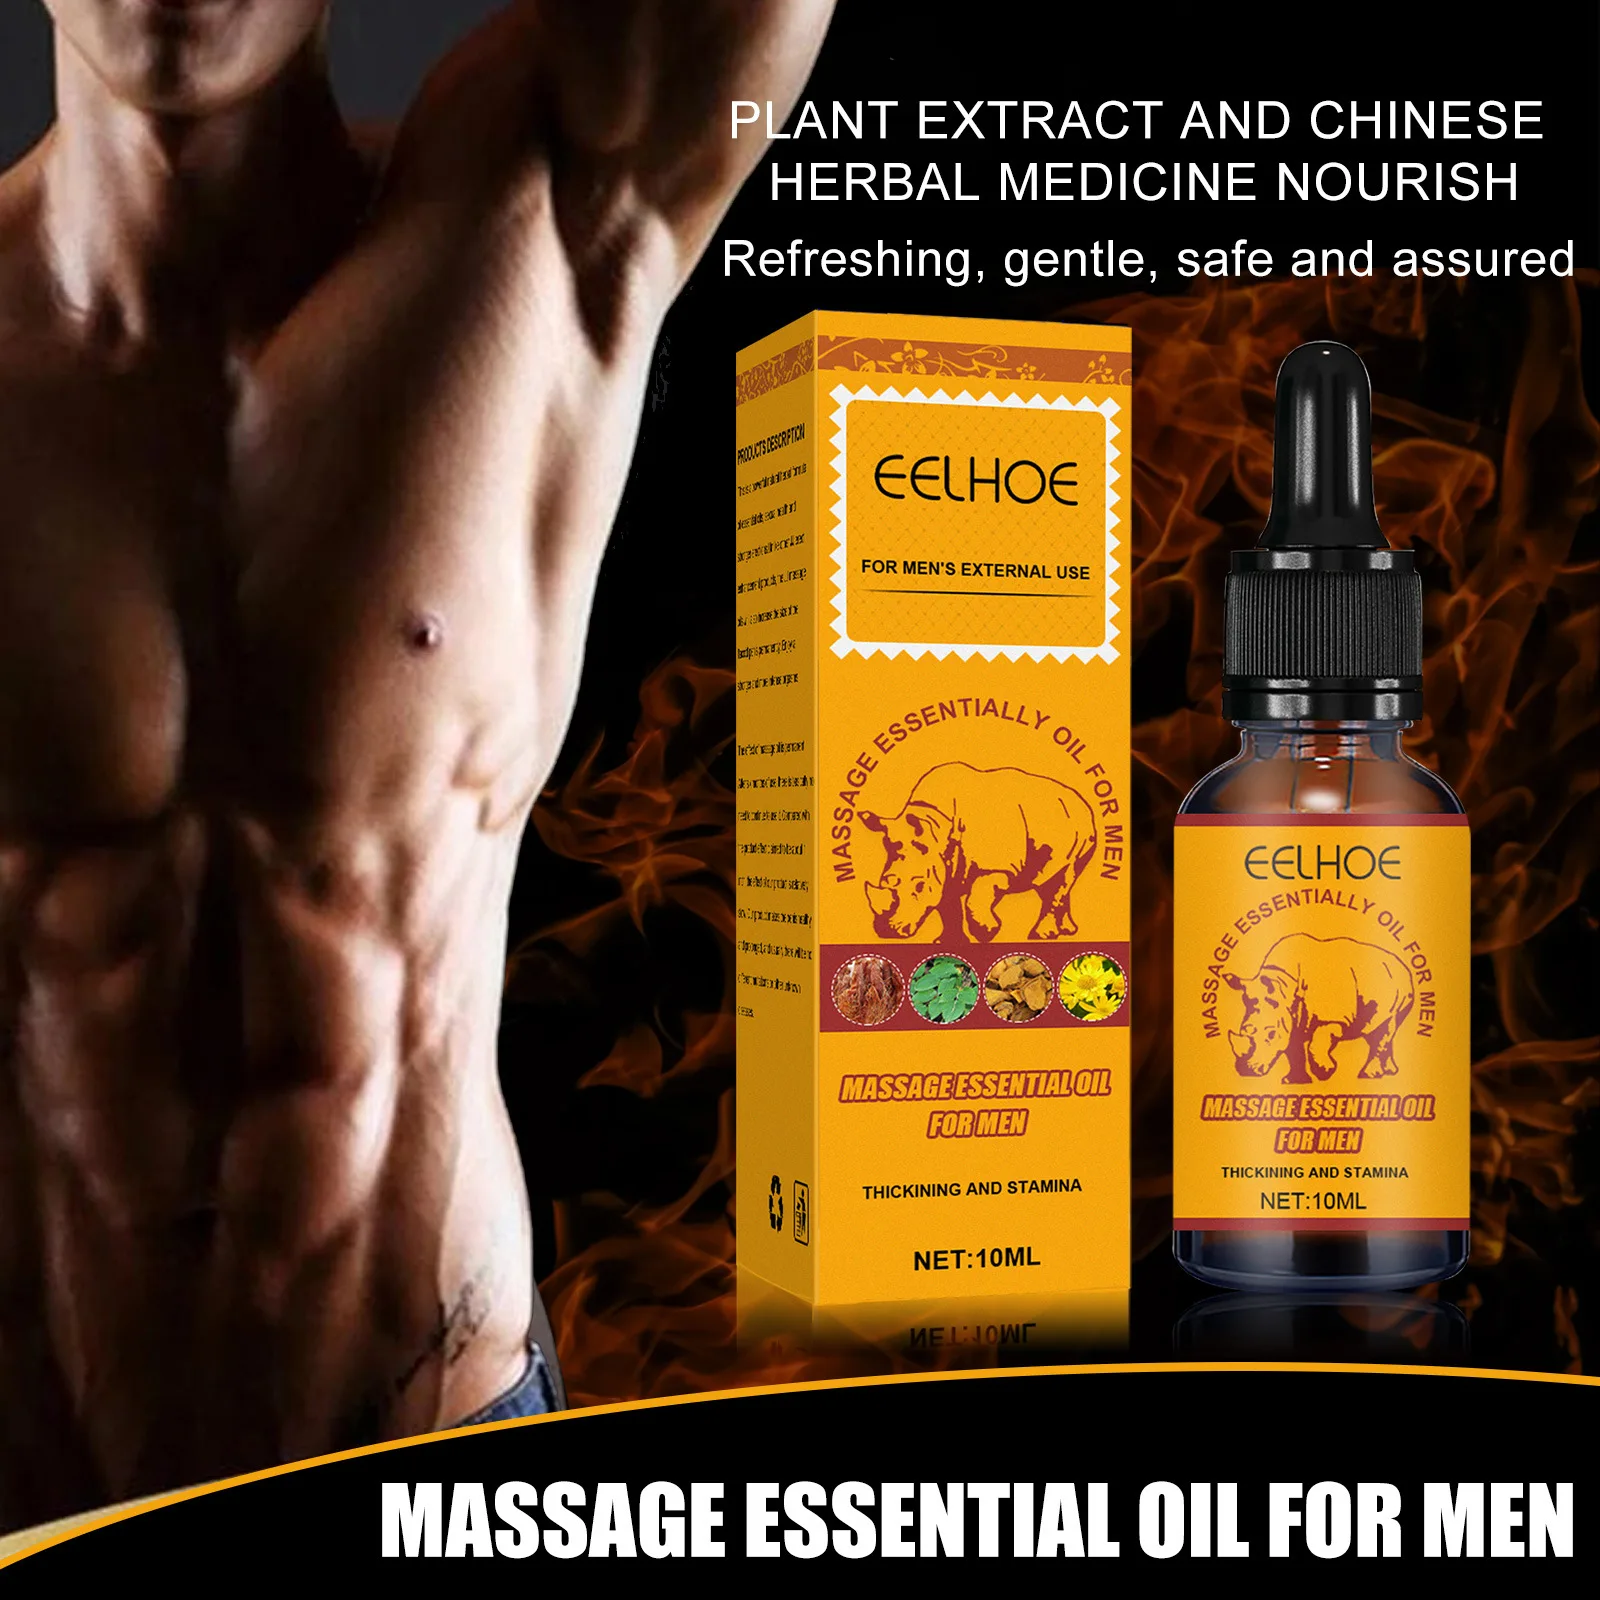 

Мужское массажное масло Eelhoe, мужской энергетический Массаж, уход за эфирным маслом для упражнений на тело, уход за телом, эфирное масло